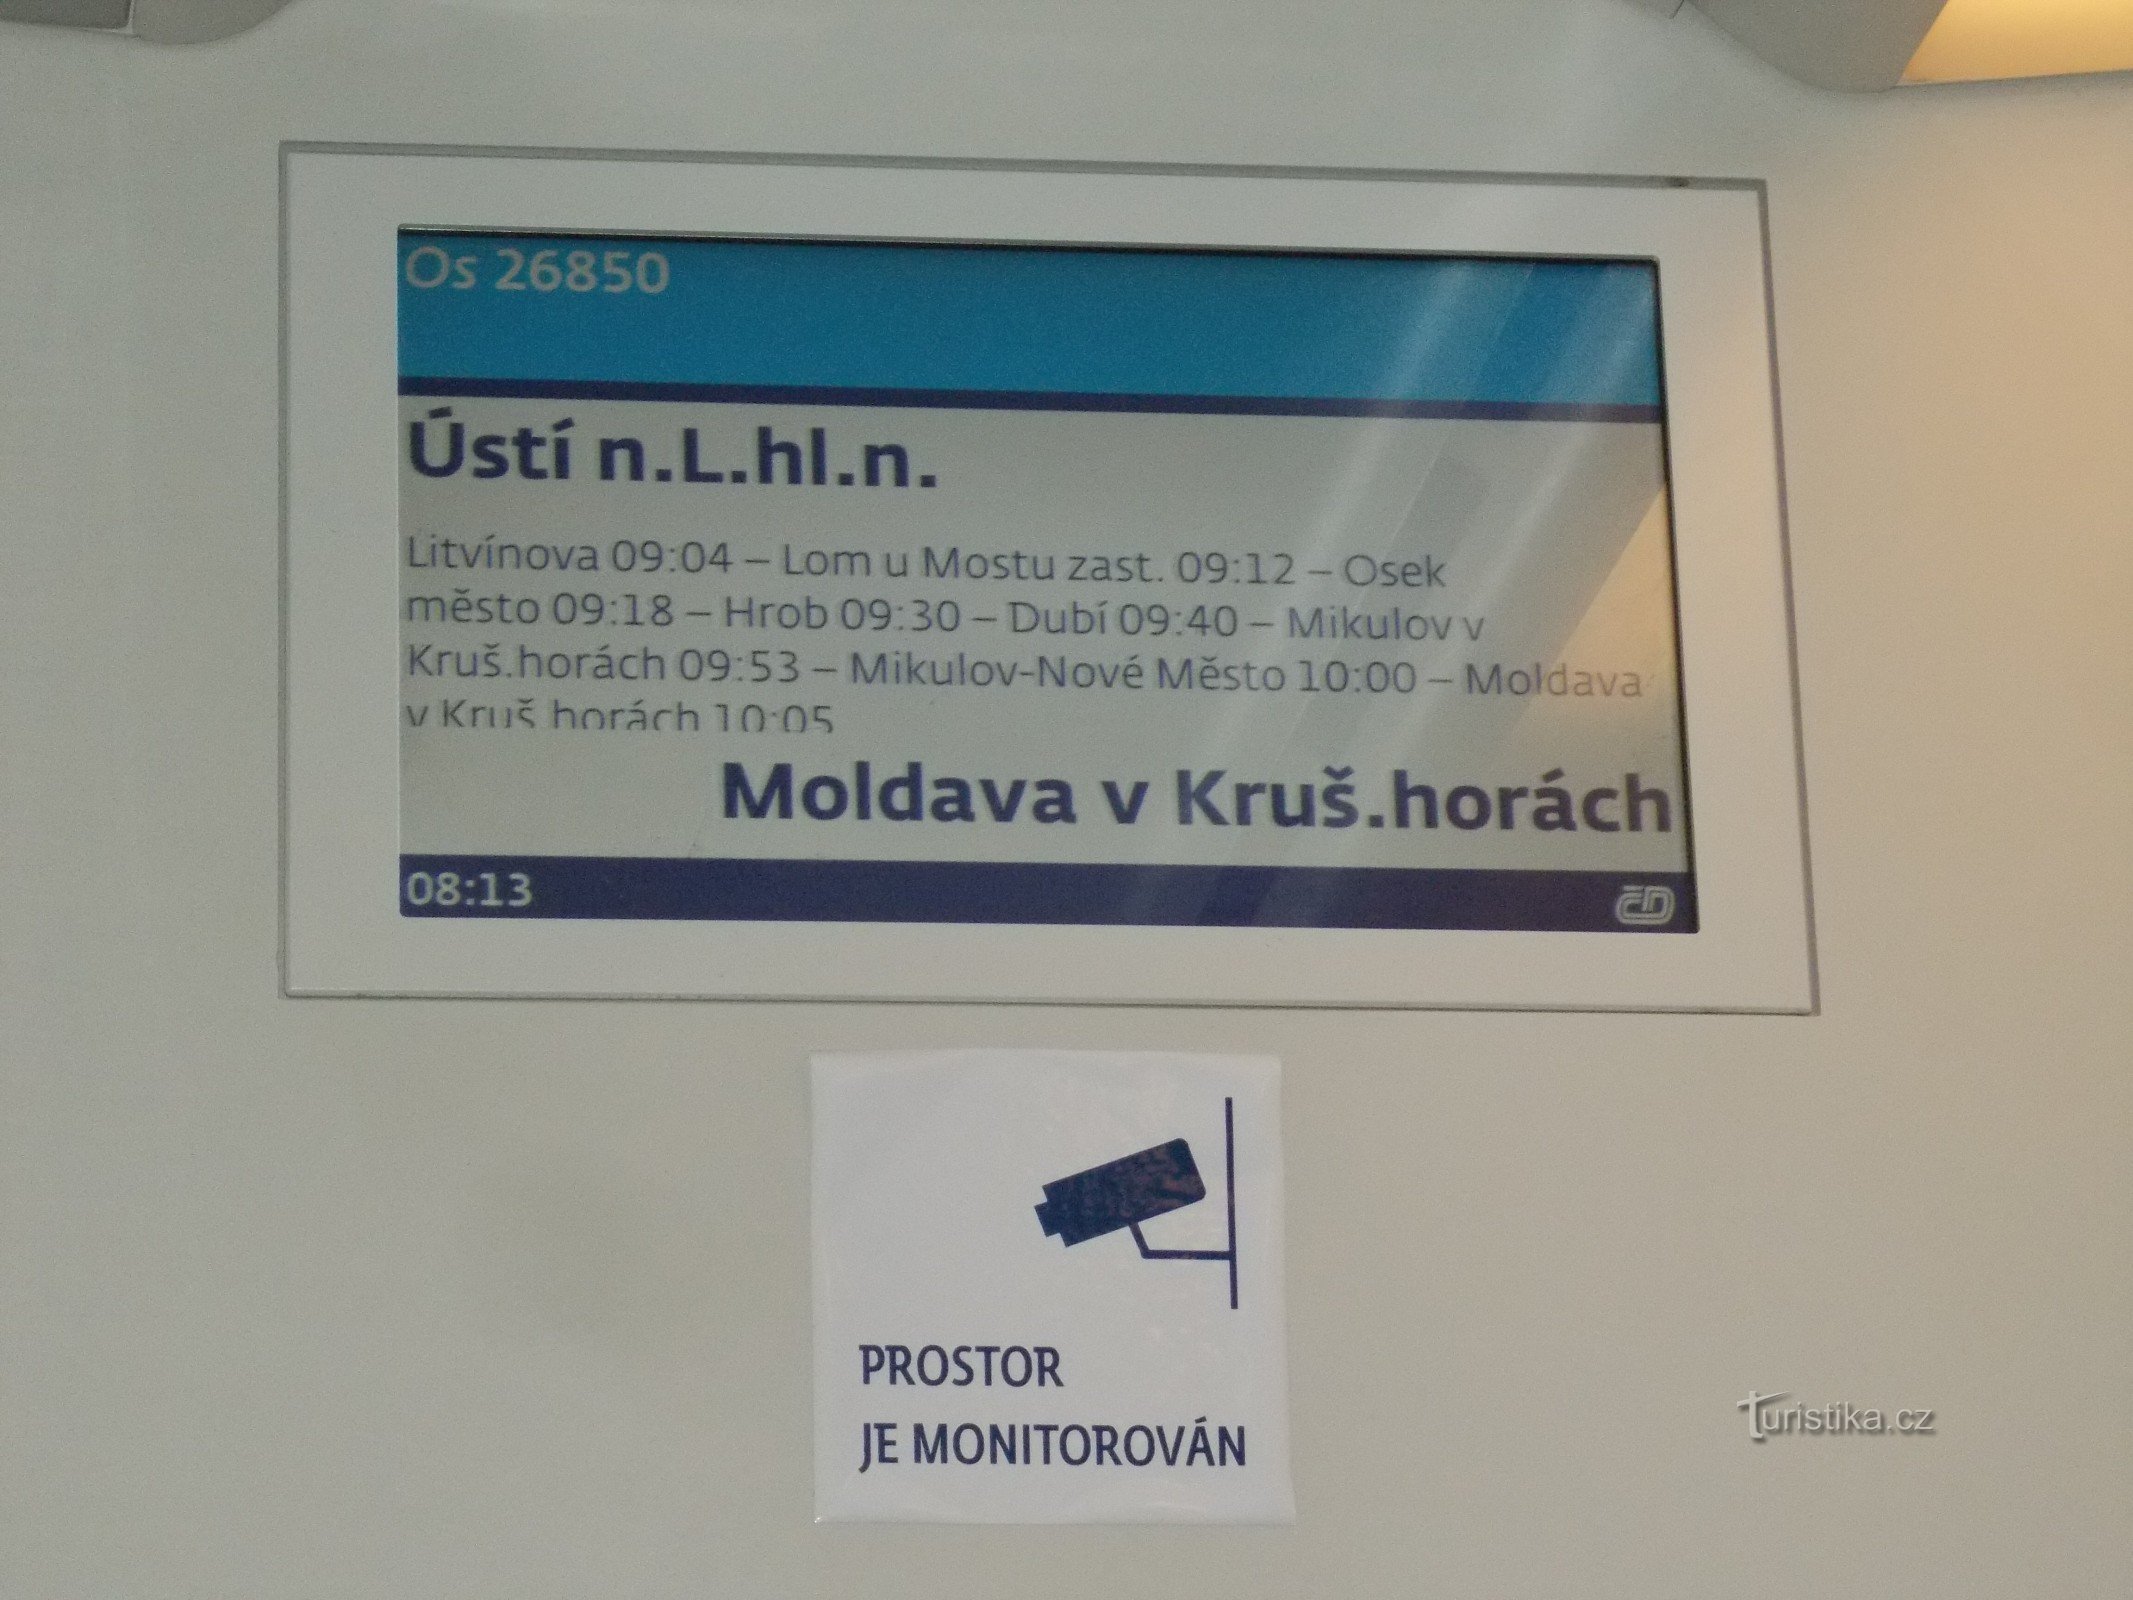 Informationspanel inde i toget.